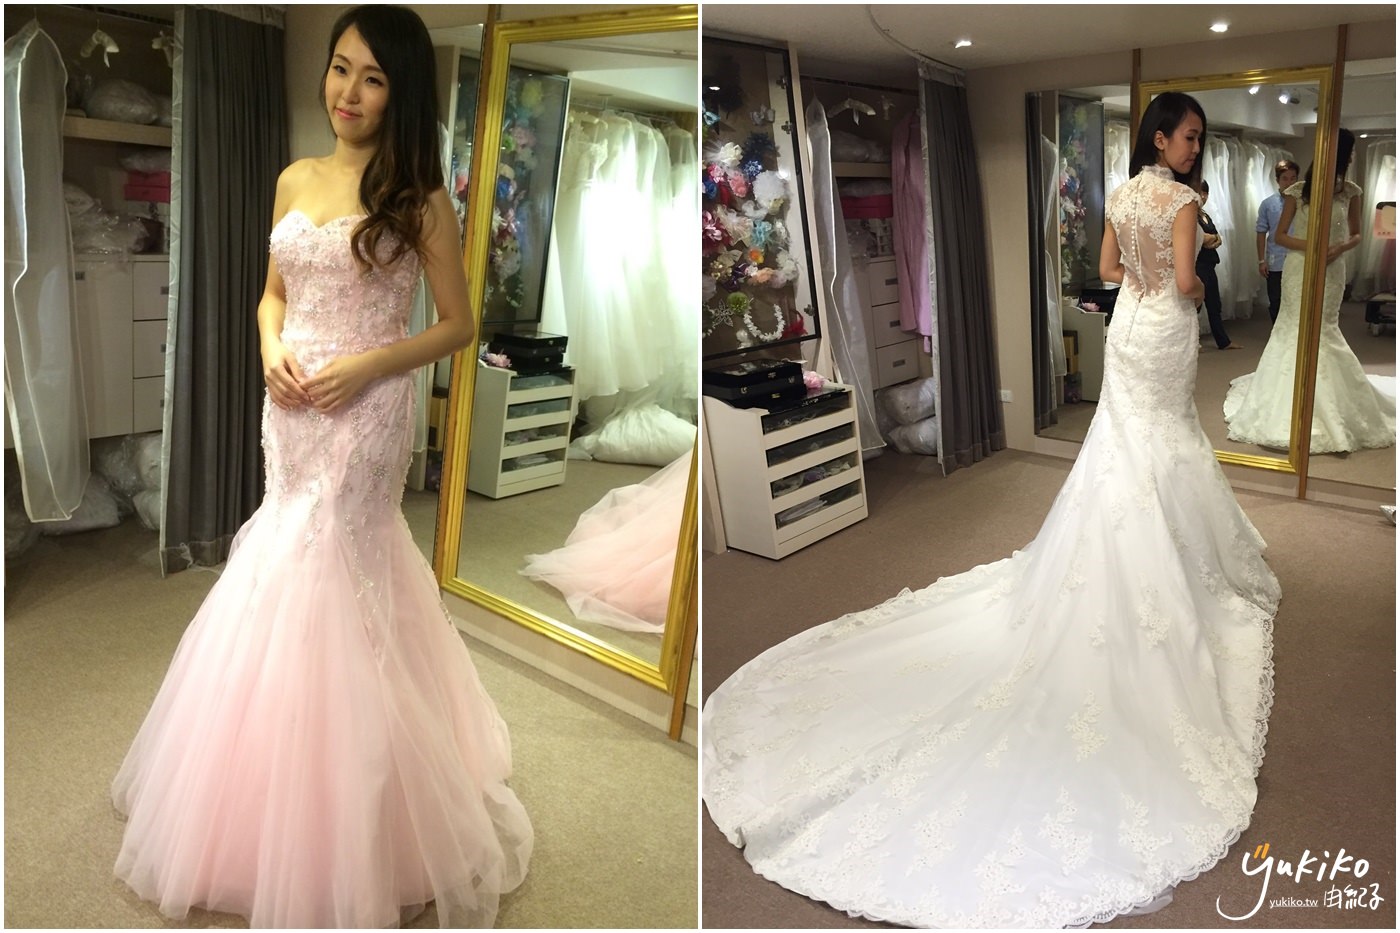 【禮服 ♥ 婚紗試穿】台北市 Eudora 恩朵拉精緻手工婚紗 超美麗的手工白紗及禮服~♥